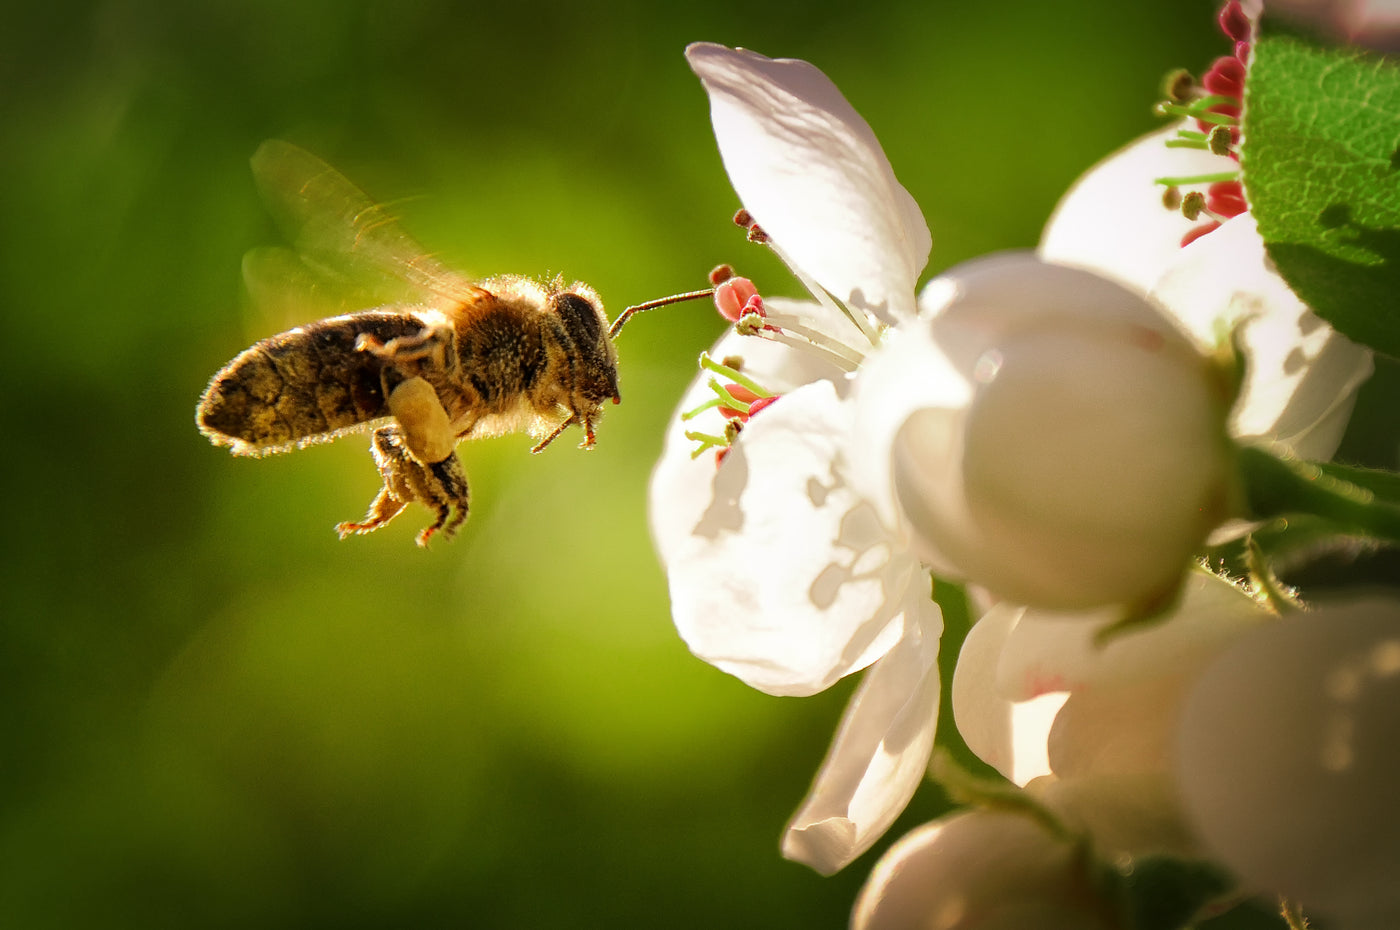 Eine Biene fliegt zu einer Blumenblühte, um von dieser den Nektar zu bekommen. Bienen sind wichtige Nützlinge.